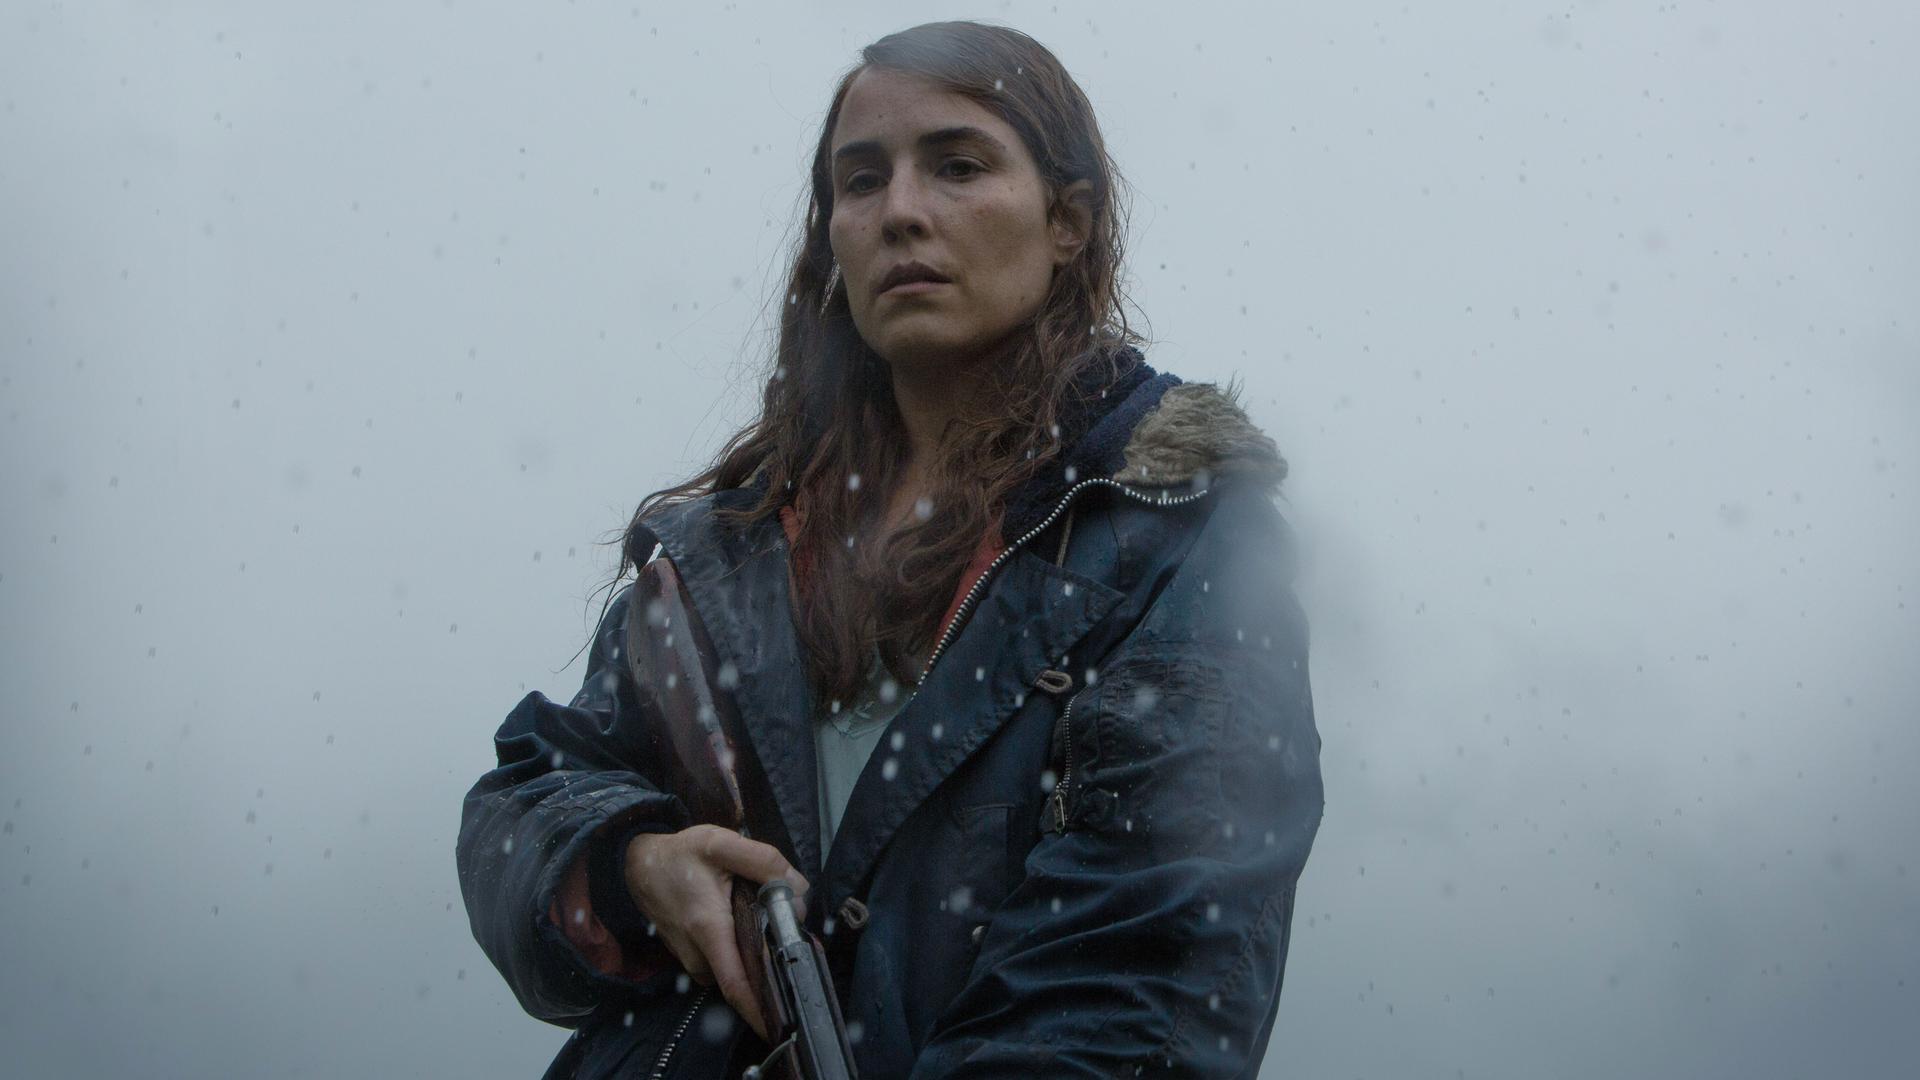 Hauptdarstellerin Noomi Rapace als Schafzüchterin Maria mit einem Gewehr in der Hand. Im Hintergrund wabert Nebel.